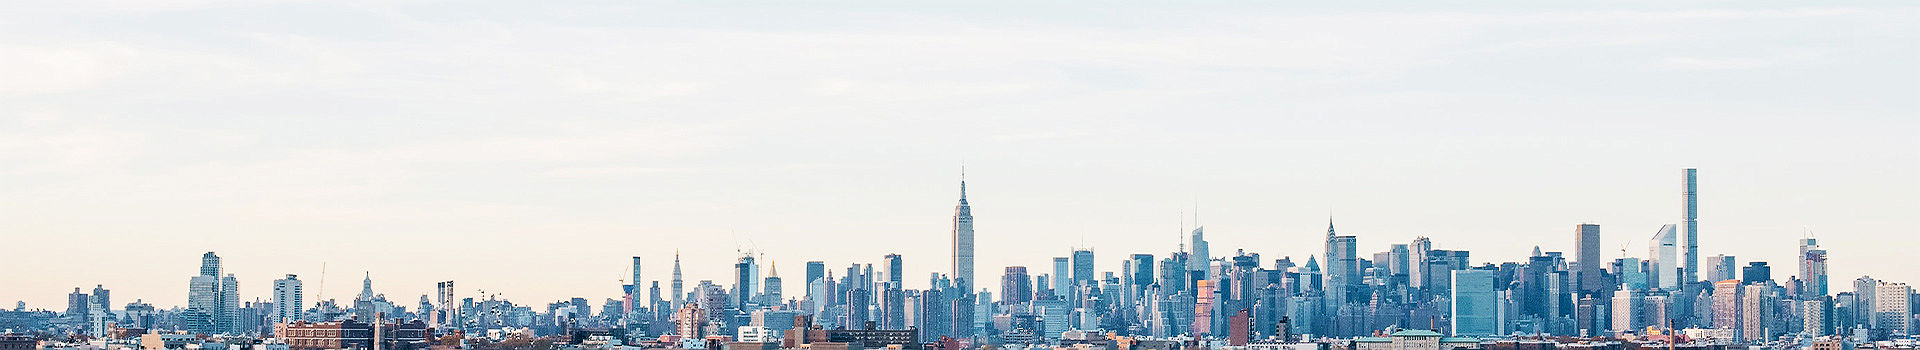 Skyline de New York